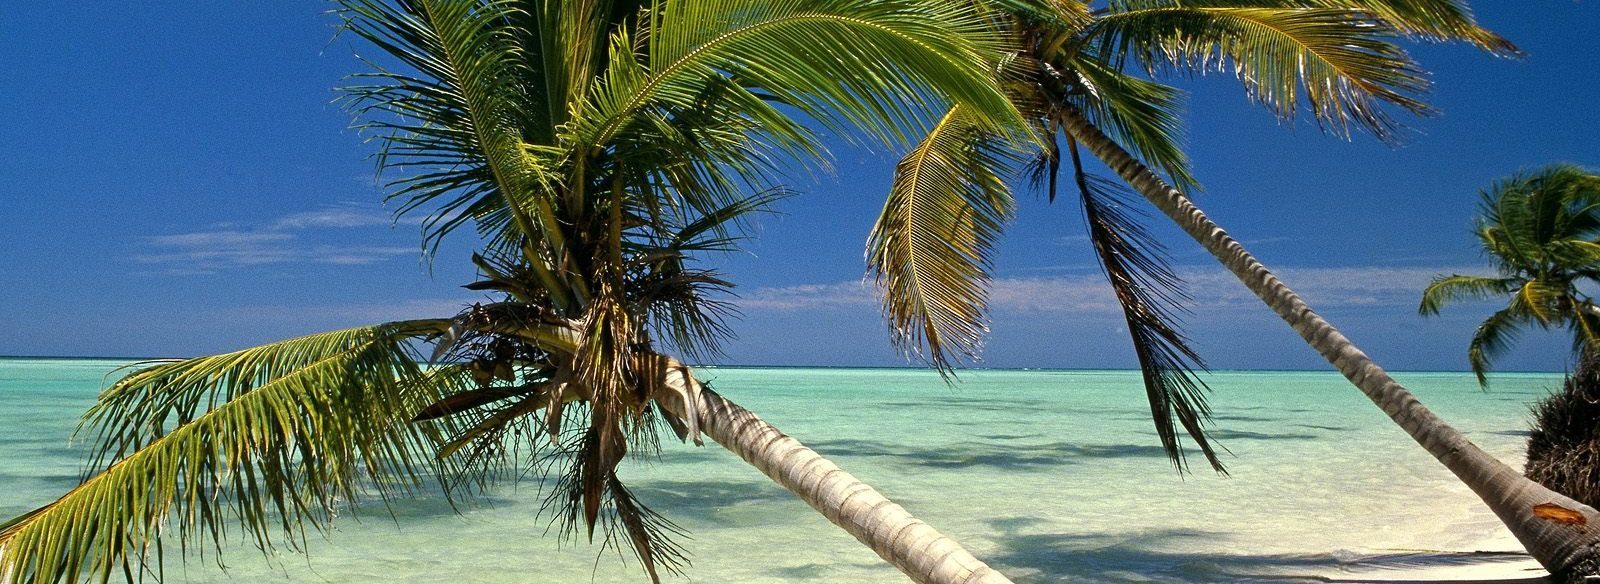 Горящие туры и путевки в Доминикану, дешевые цены на отдых в Доминикане